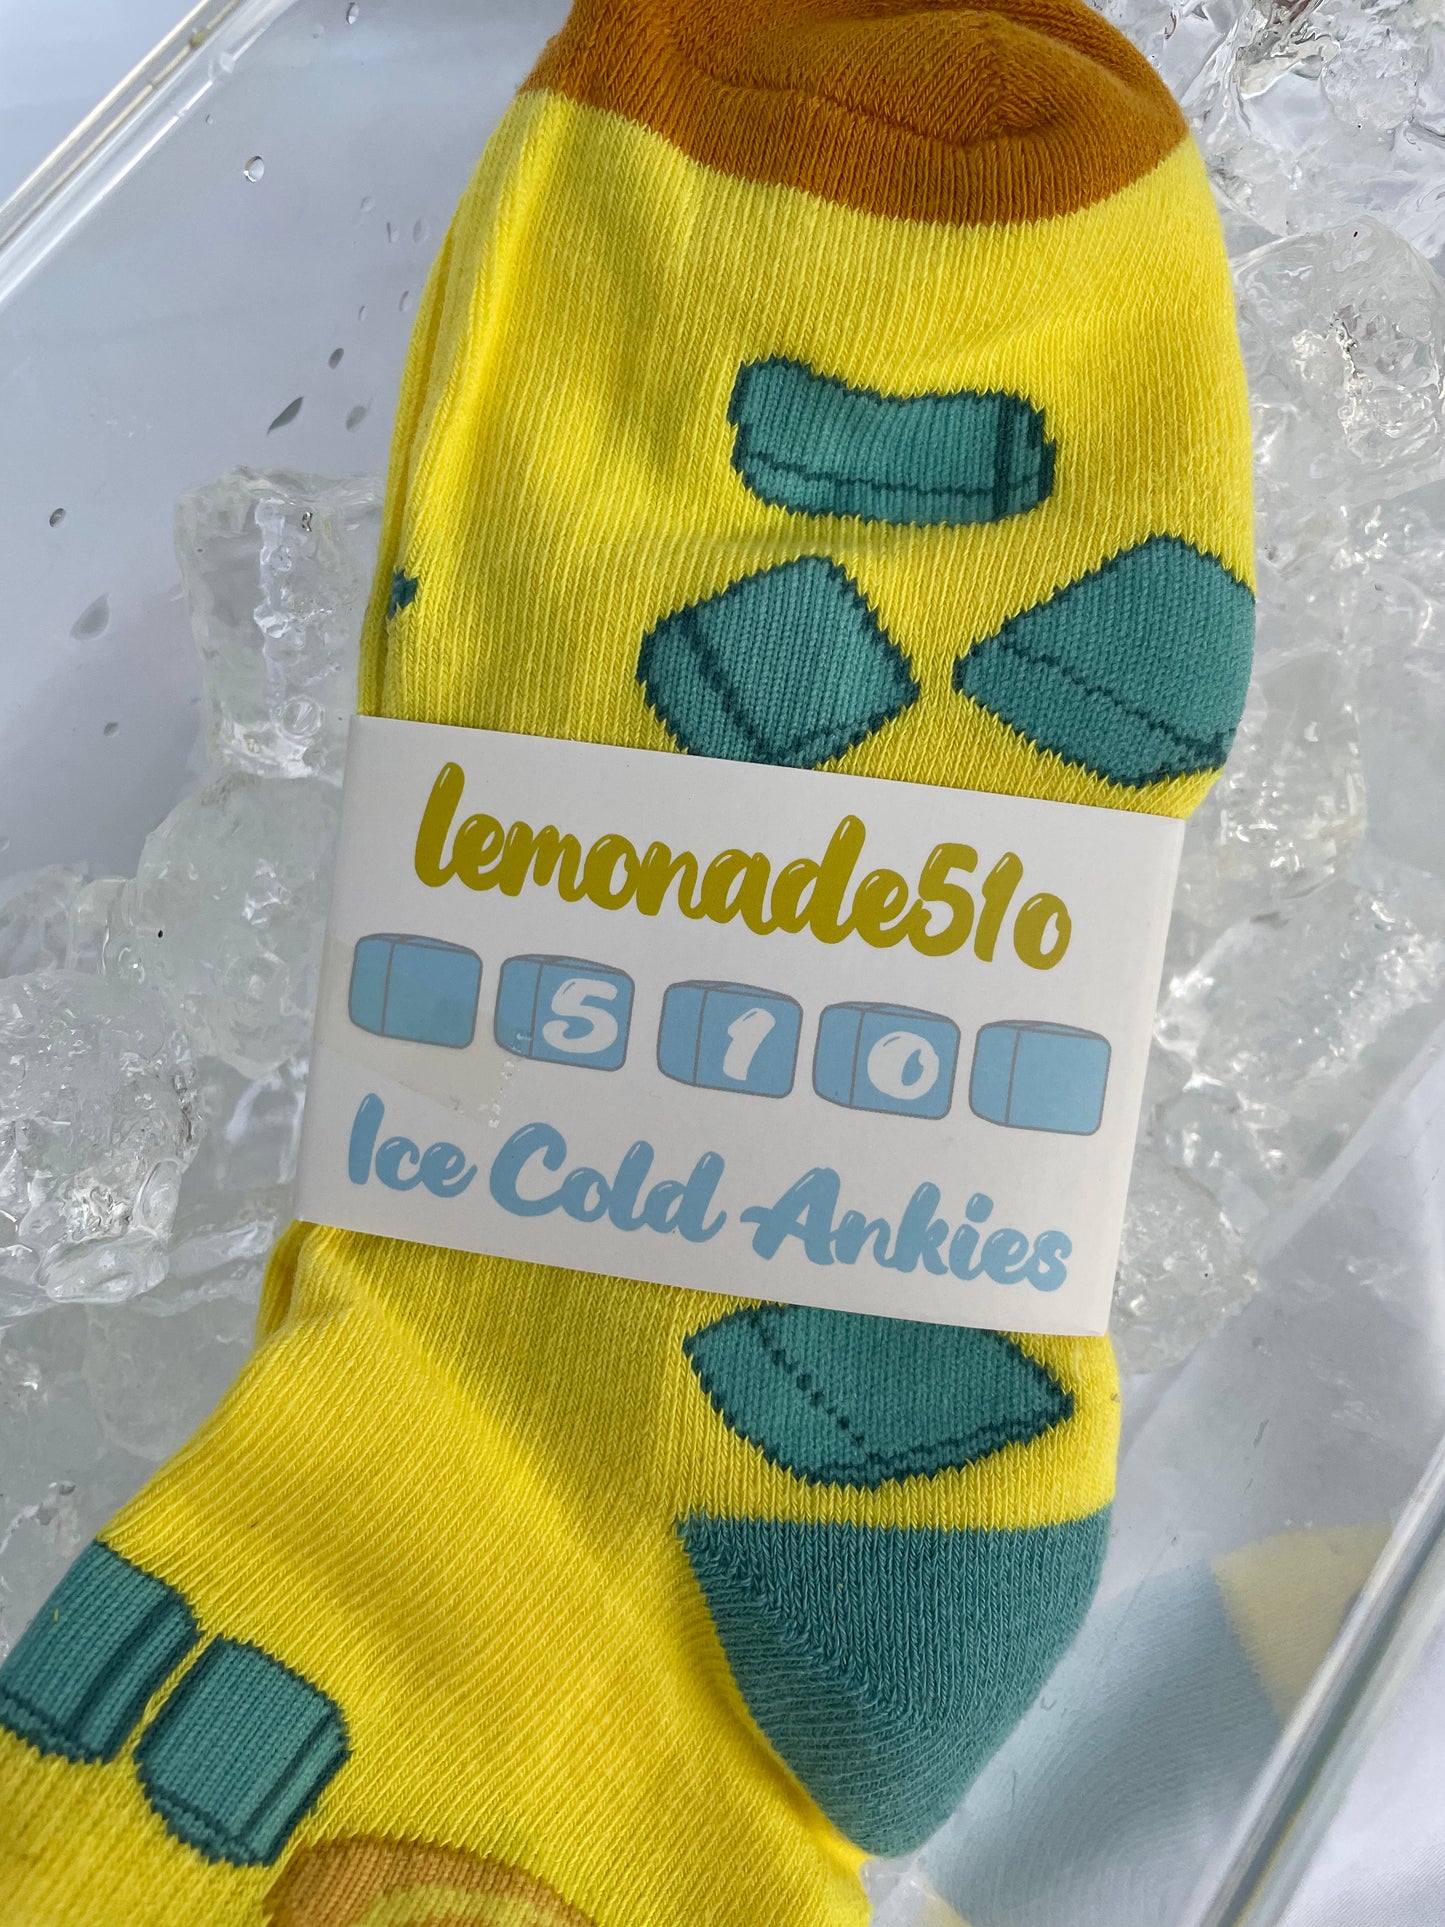 Ice Cold Ankie Socks